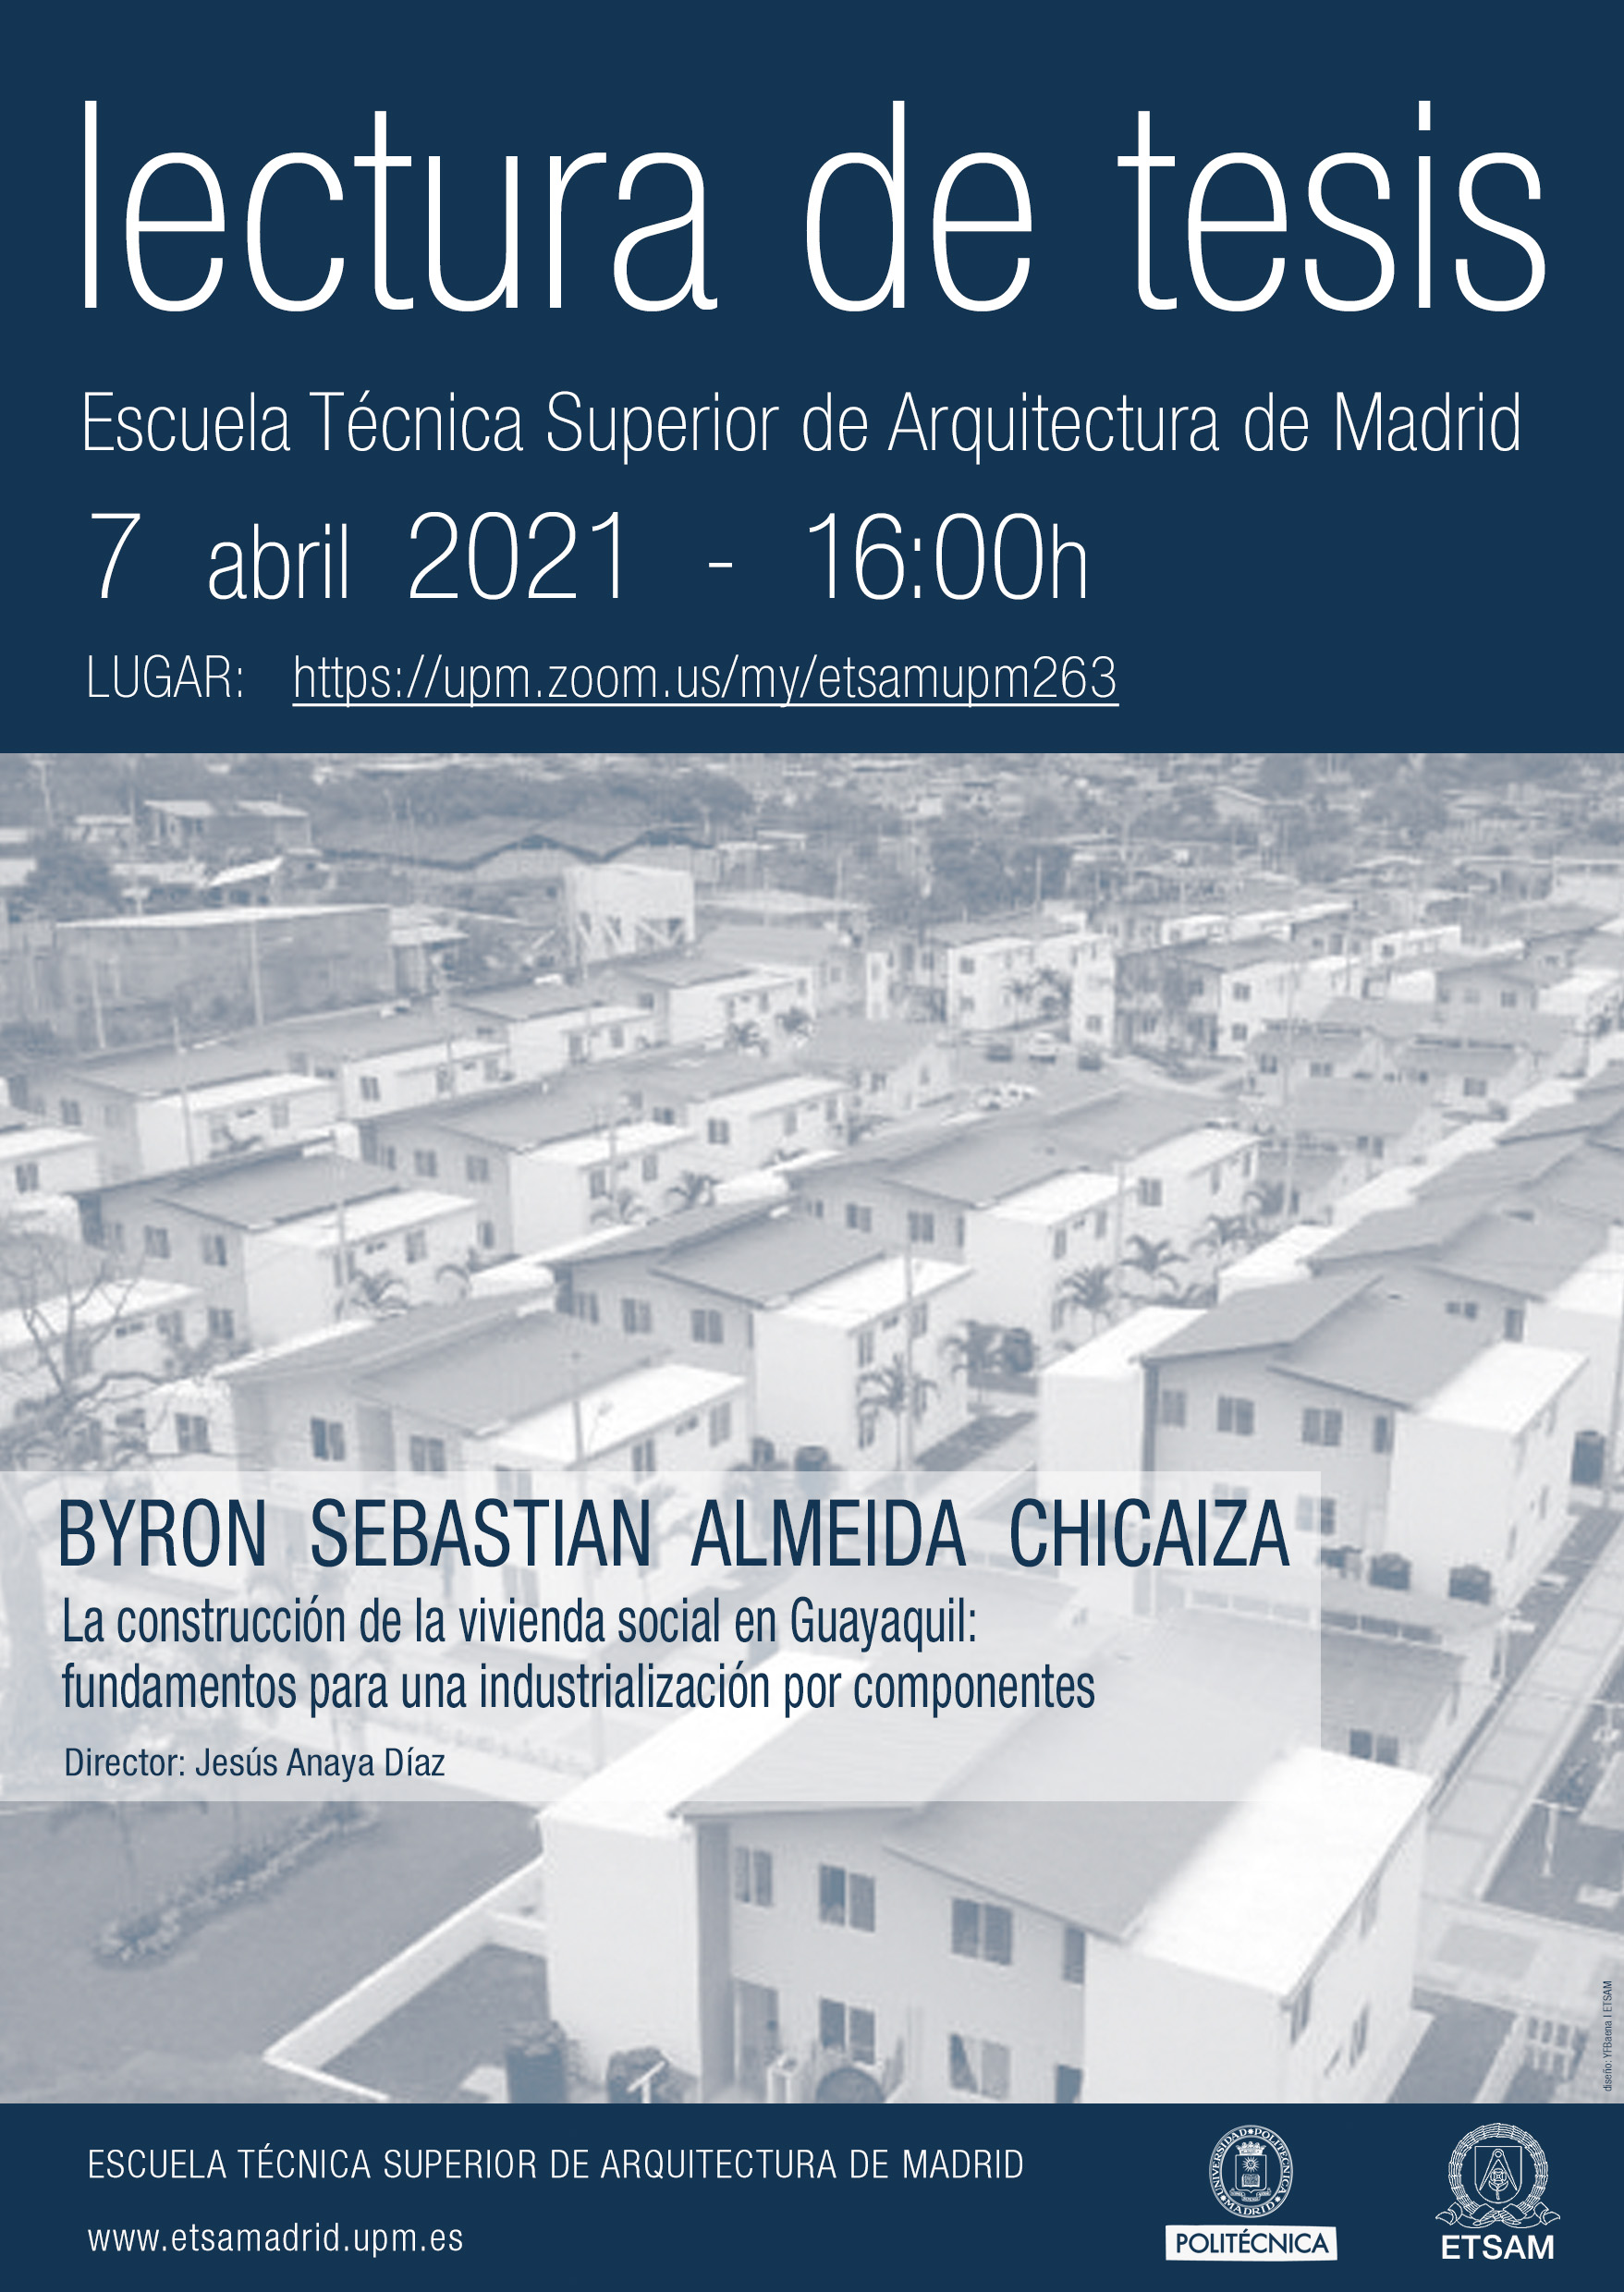 Próxima lectura tesis doctoral 7 de abril. La construcción de vivienda social en Guayaquil: fundamentos para una industrialización por componentes